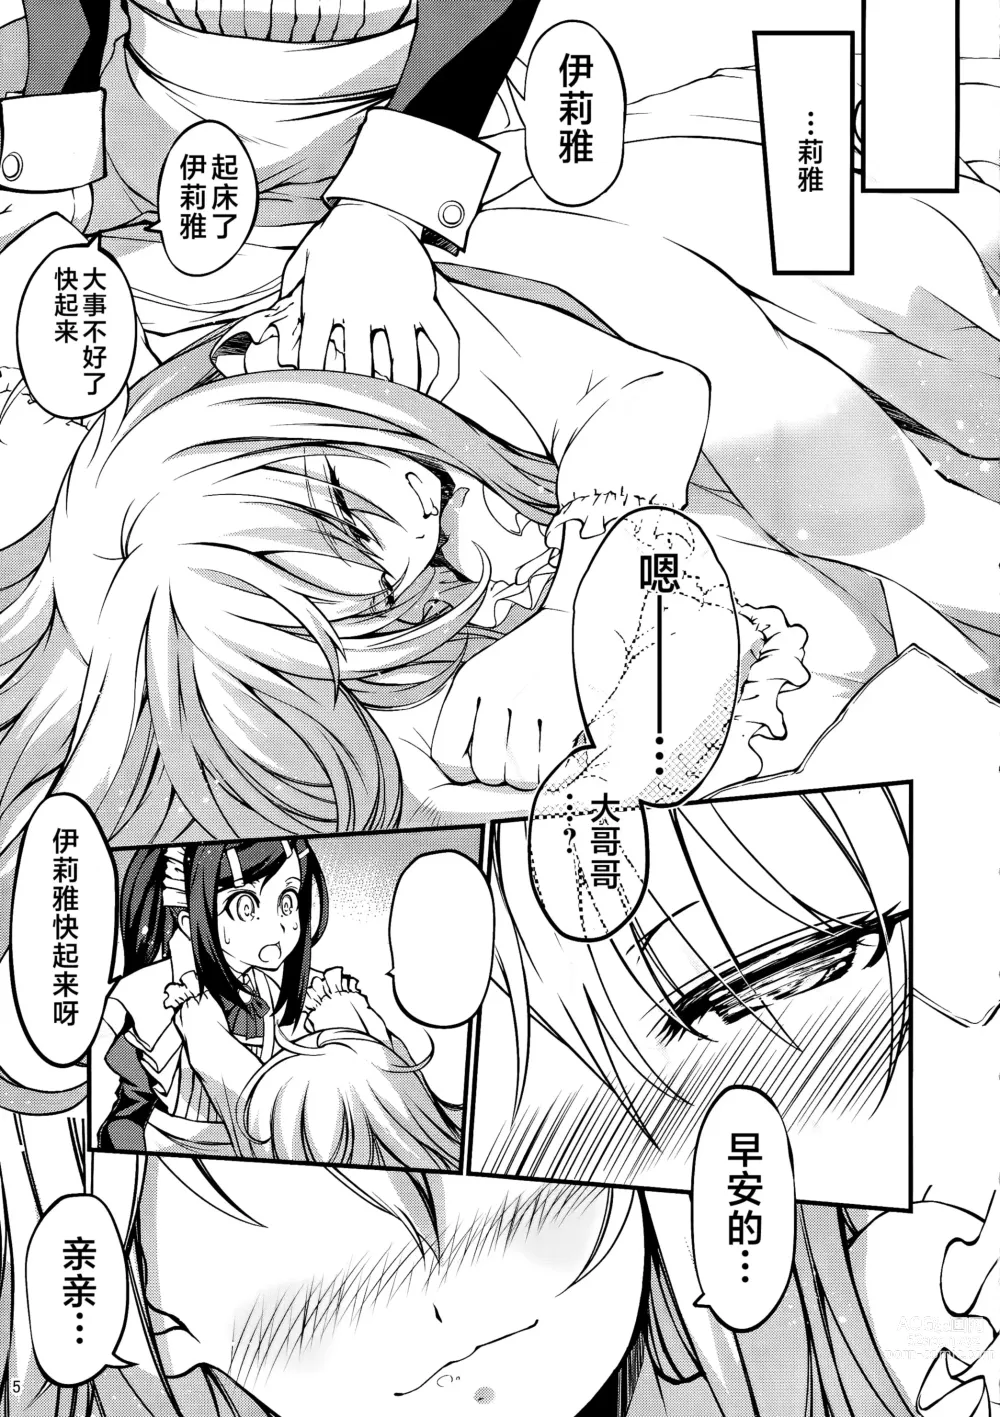 Page 4 of doujinshi SHH:01